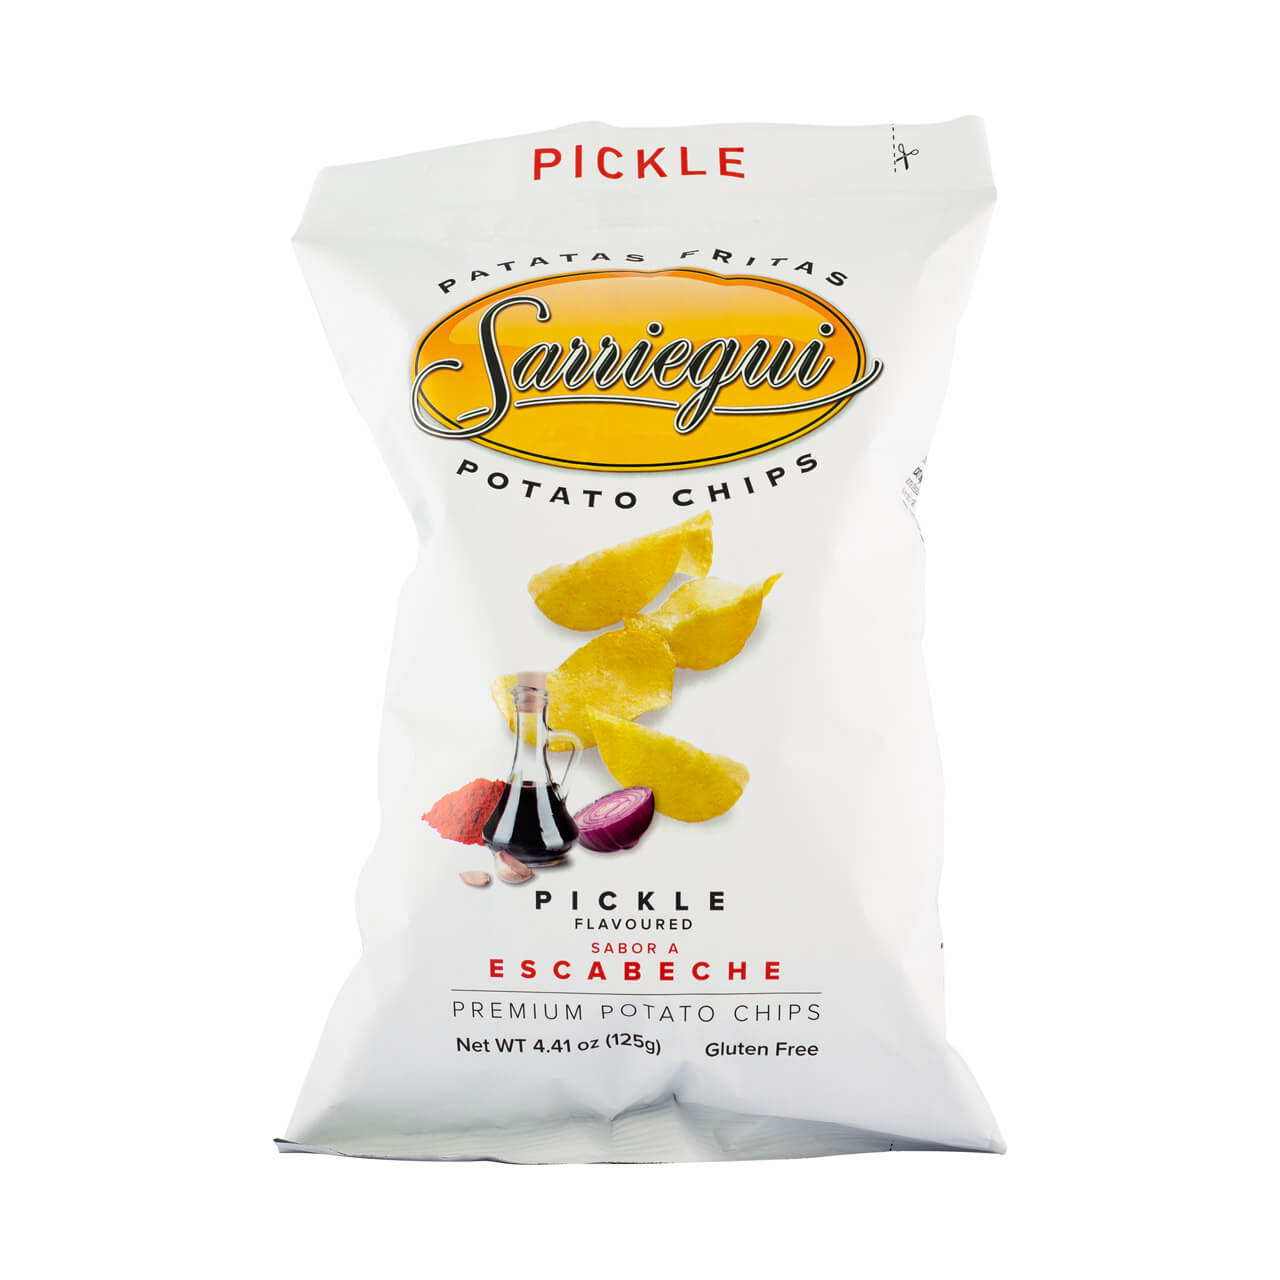 Sarriegui pickle crisps patatas brindisa spanish foods